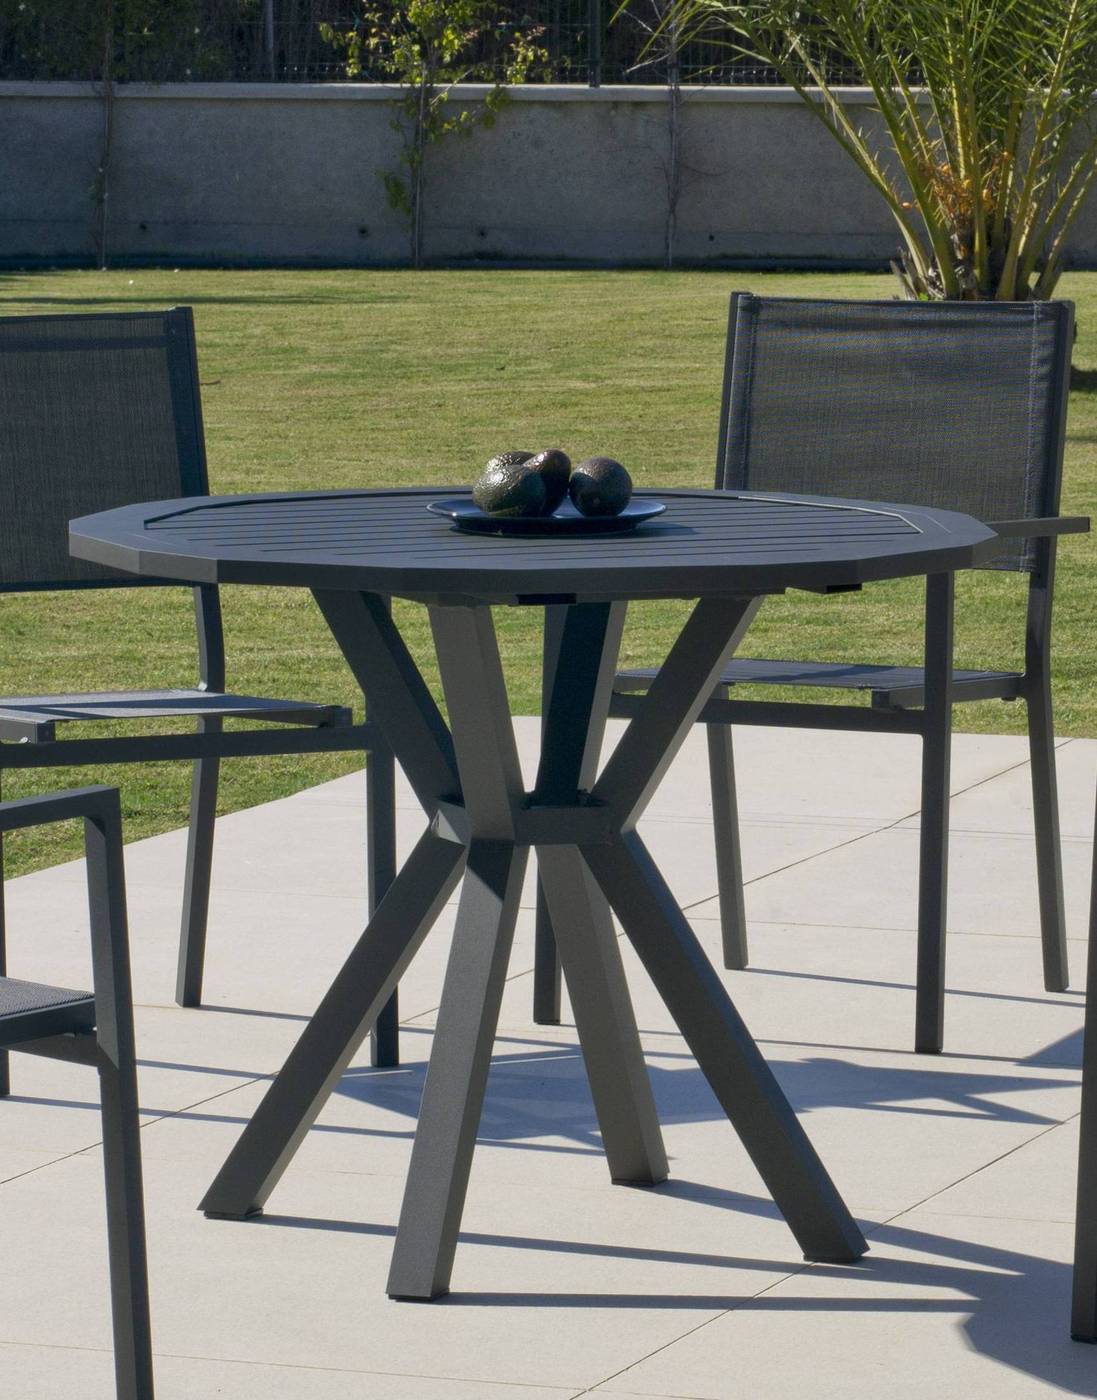 Moderna mesa poligonal de 100 cm, de aluminio luxe color blanco, antracita, champagne, plata o marrón, con tablero de lamas de aluminio.